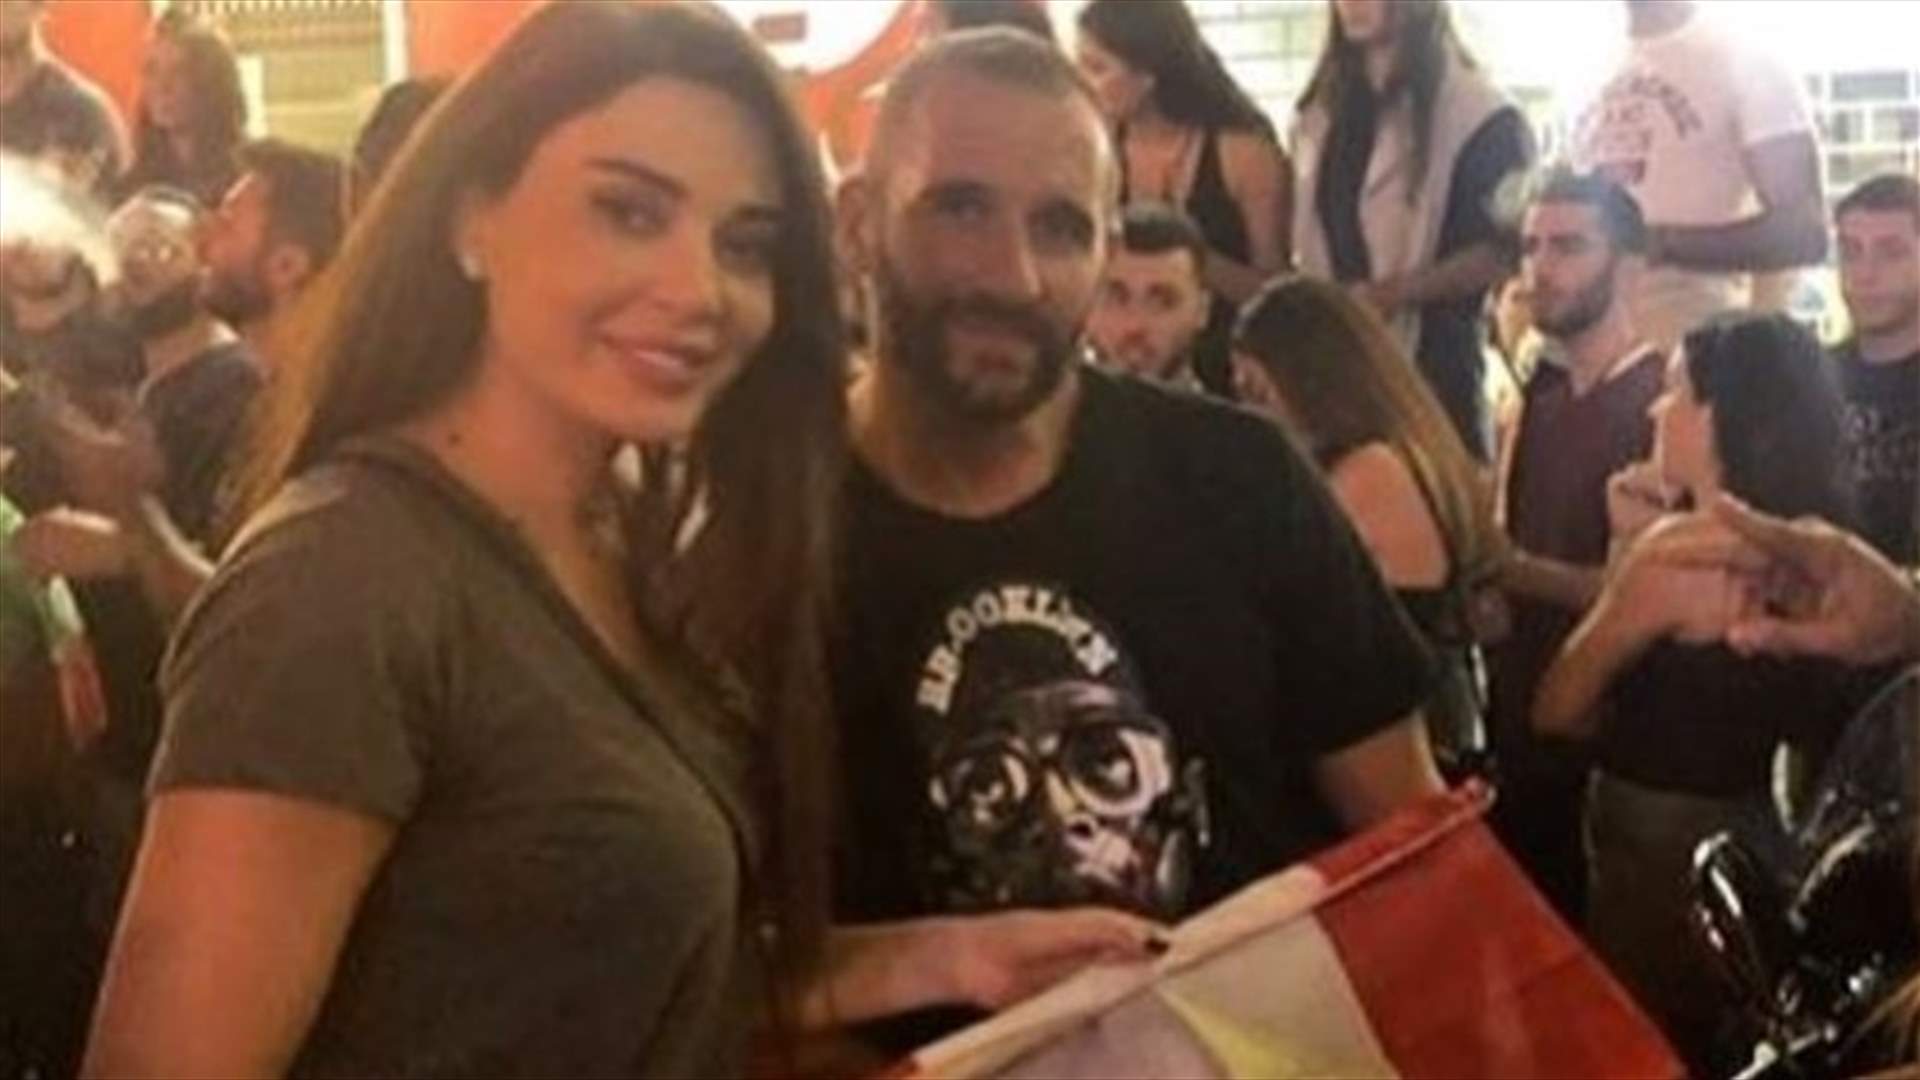 سيرين عبد والنور مع زوجها في زوق مصبح... صرخة واحدة مع اللبنانيين